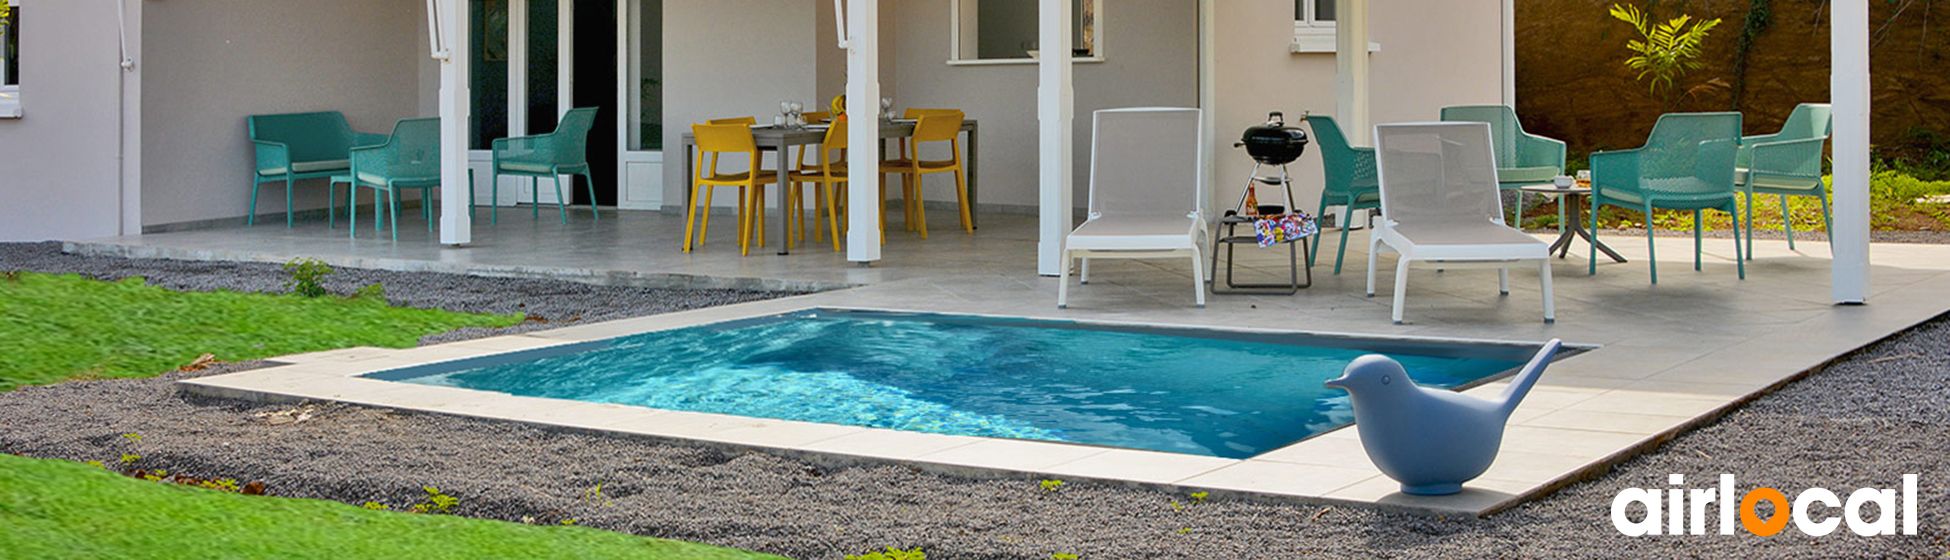 Location maison vacances avec piscine privée pas cher martinique